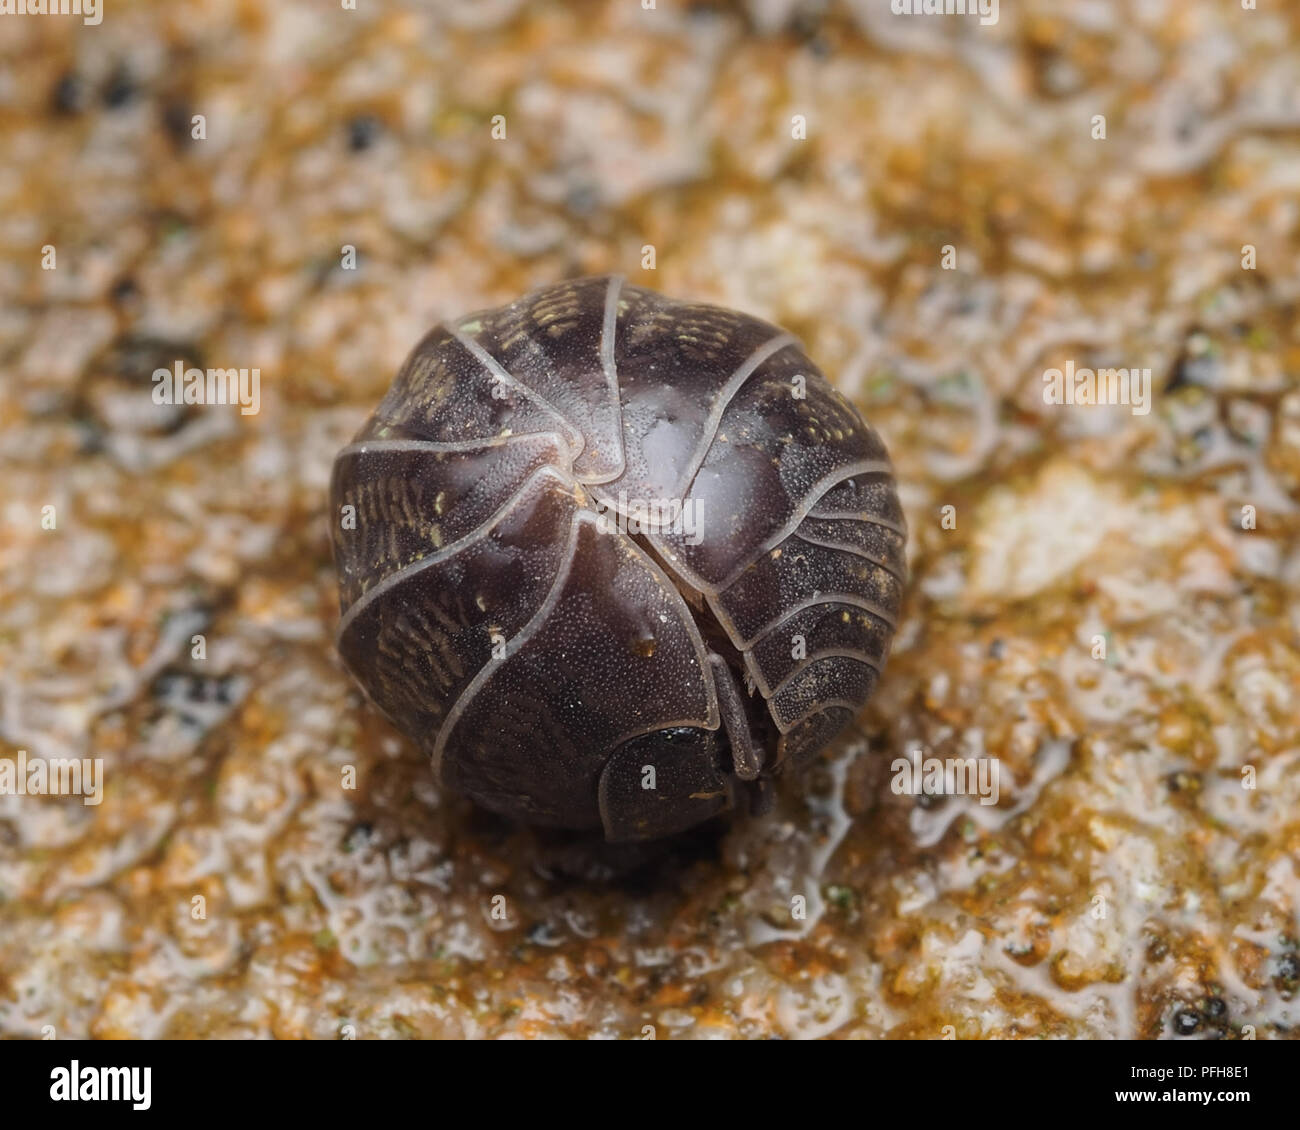 Cloporte Armadillidium vulgare (pilule) recroquevillé en position défensive sur la masse. Tipperary, Irlande Banque D'Images